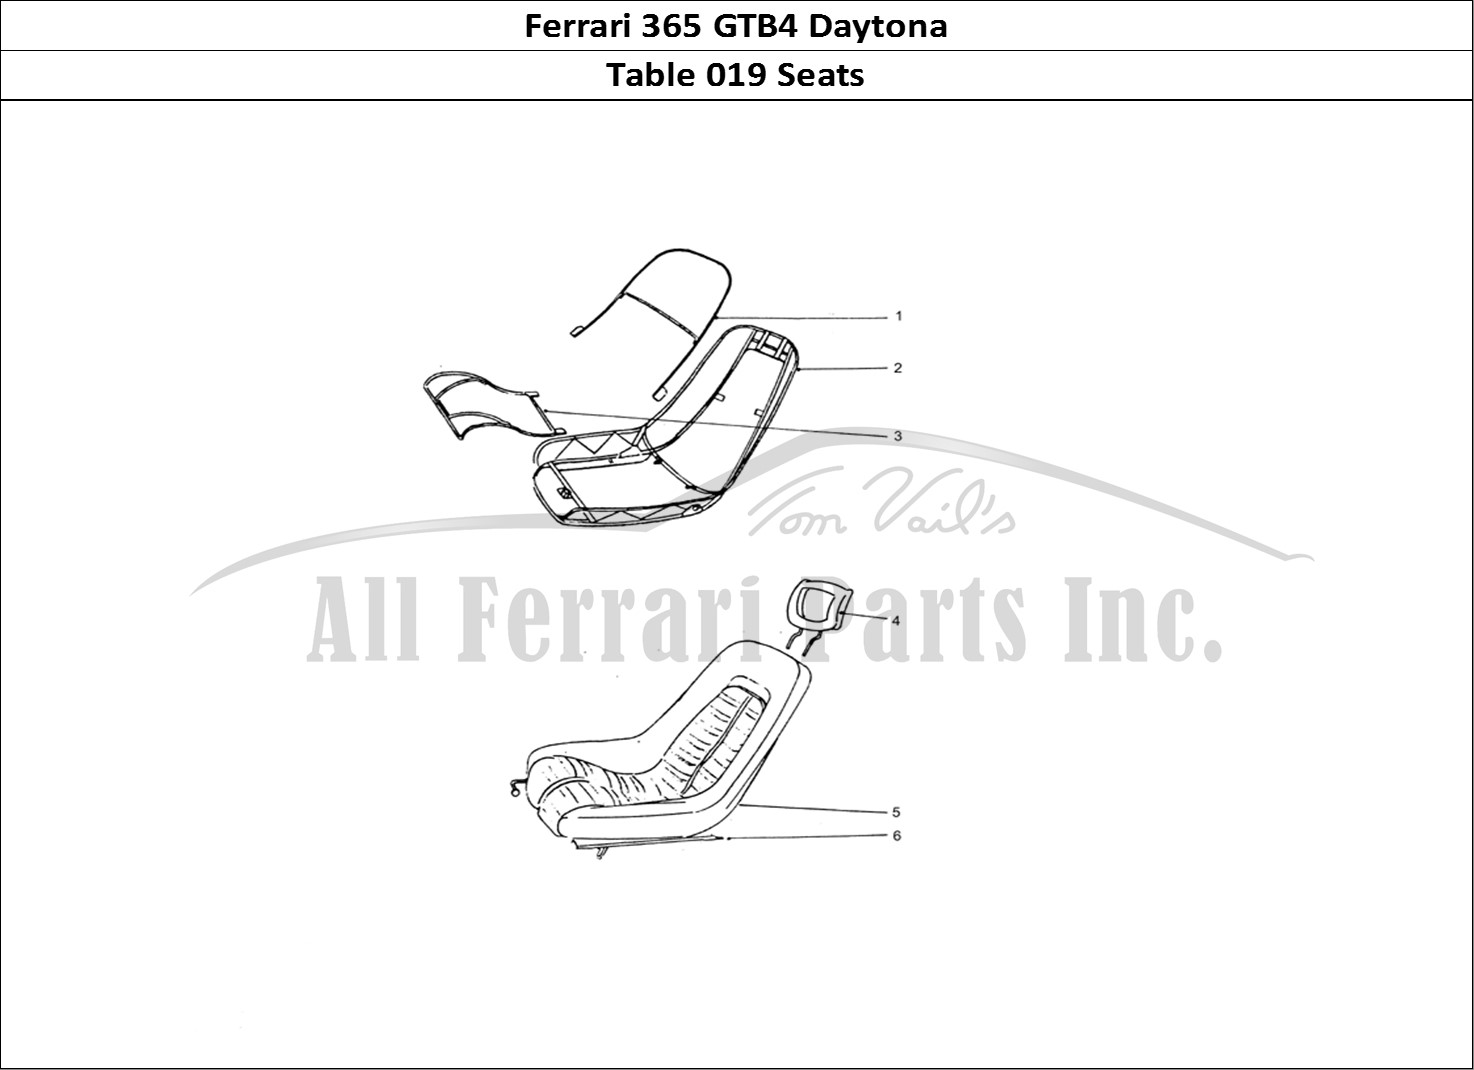 Ferrari Parts Ferrari 365 GTB4 Daytona (Coachwork) Page 019 Front Seats